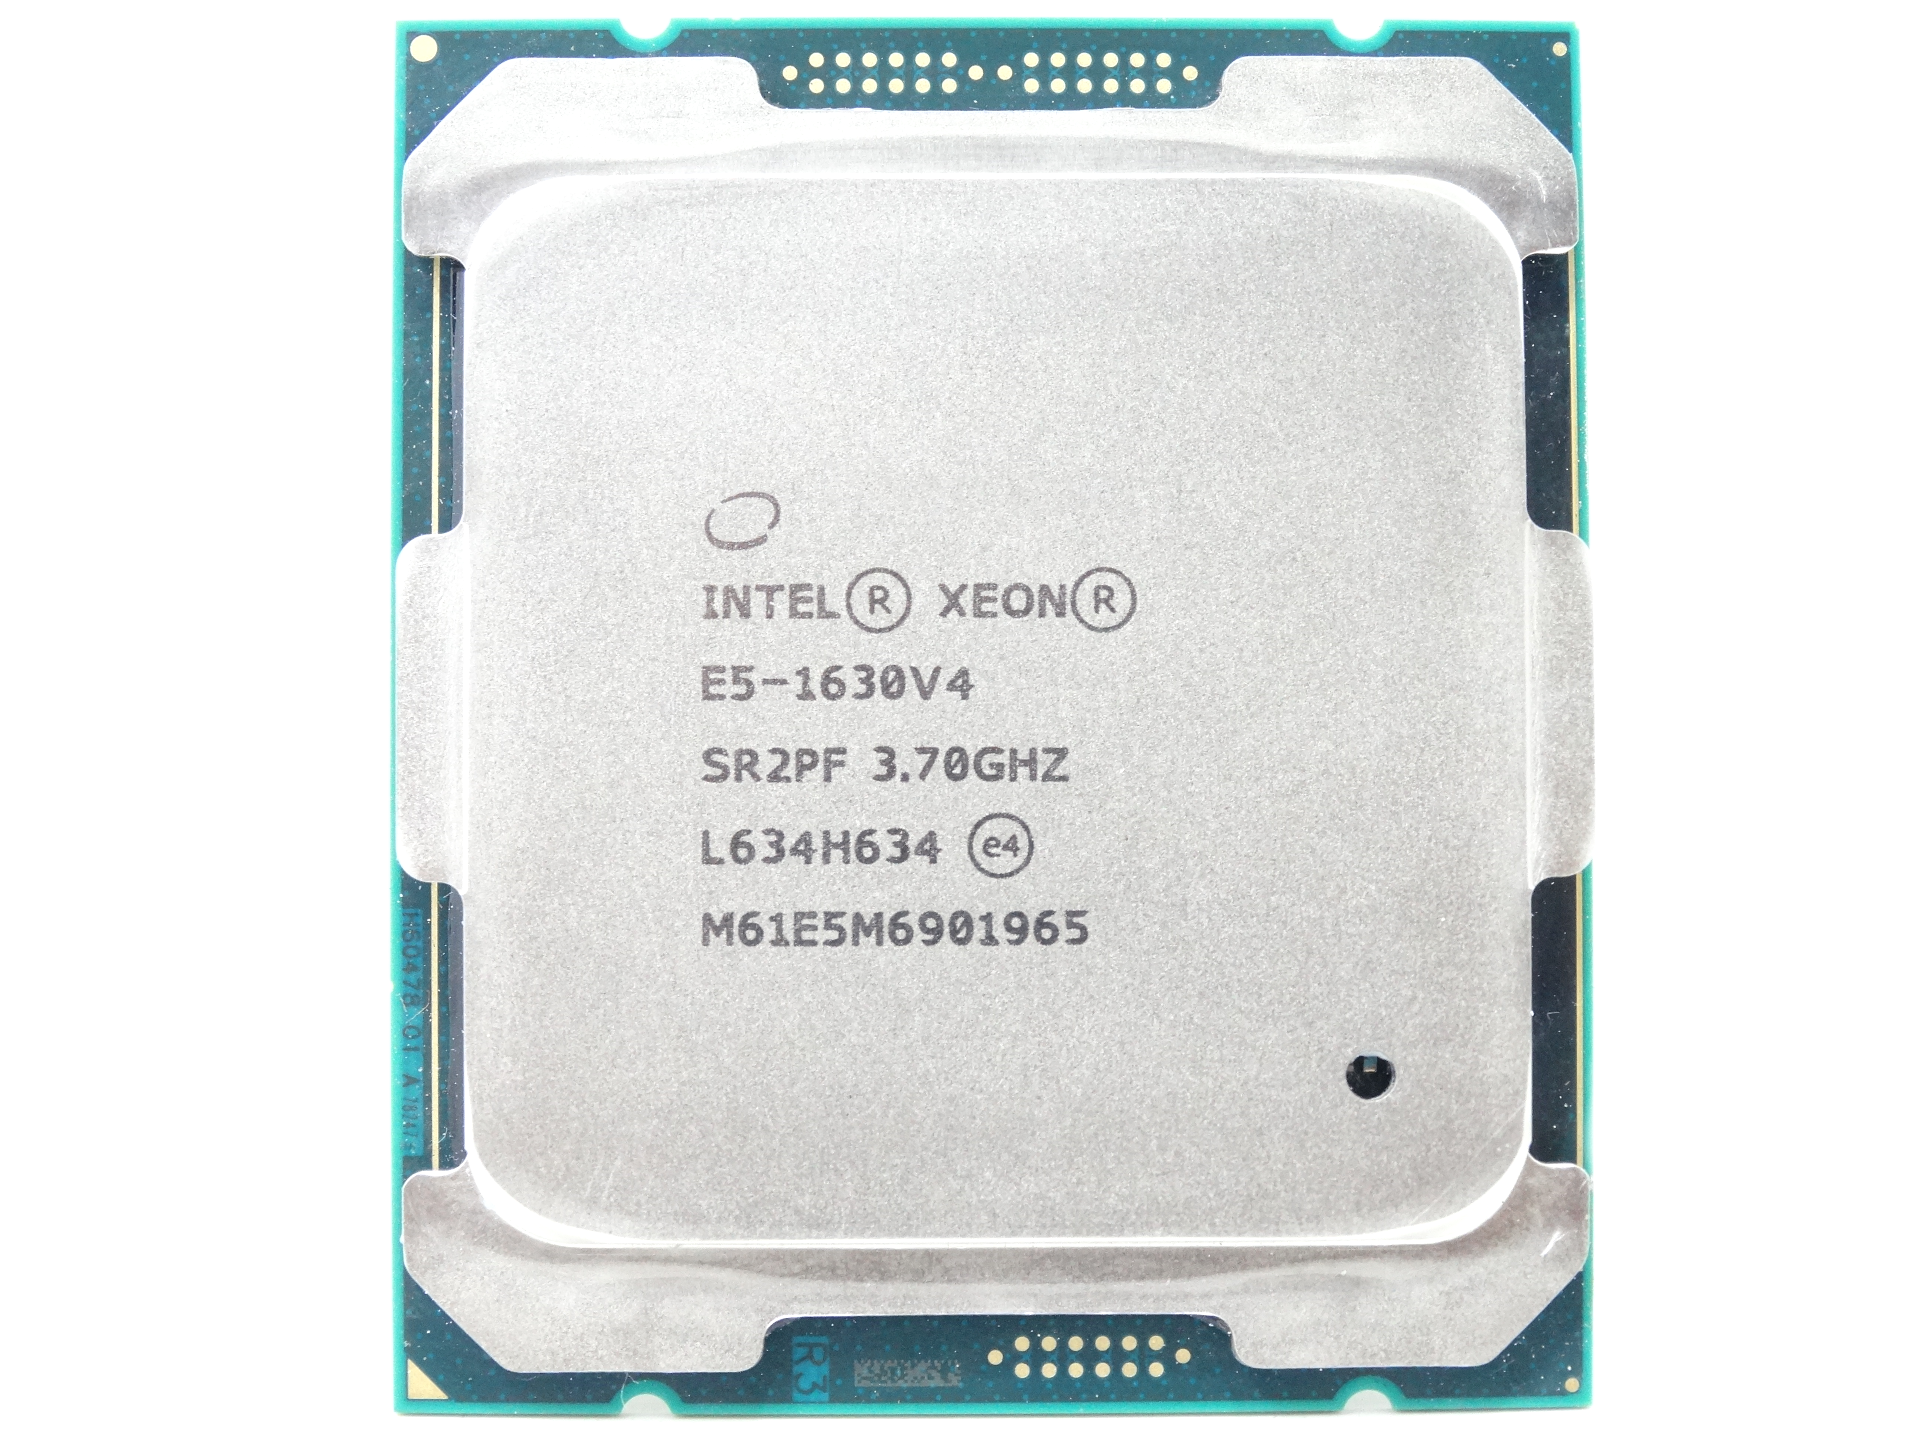 Intel Xeon E5-1630v4 Quad Core 3.70GHz 5GT/s LGA2011-3 CPU Processor (Intel Xeon E5-1630 v4)